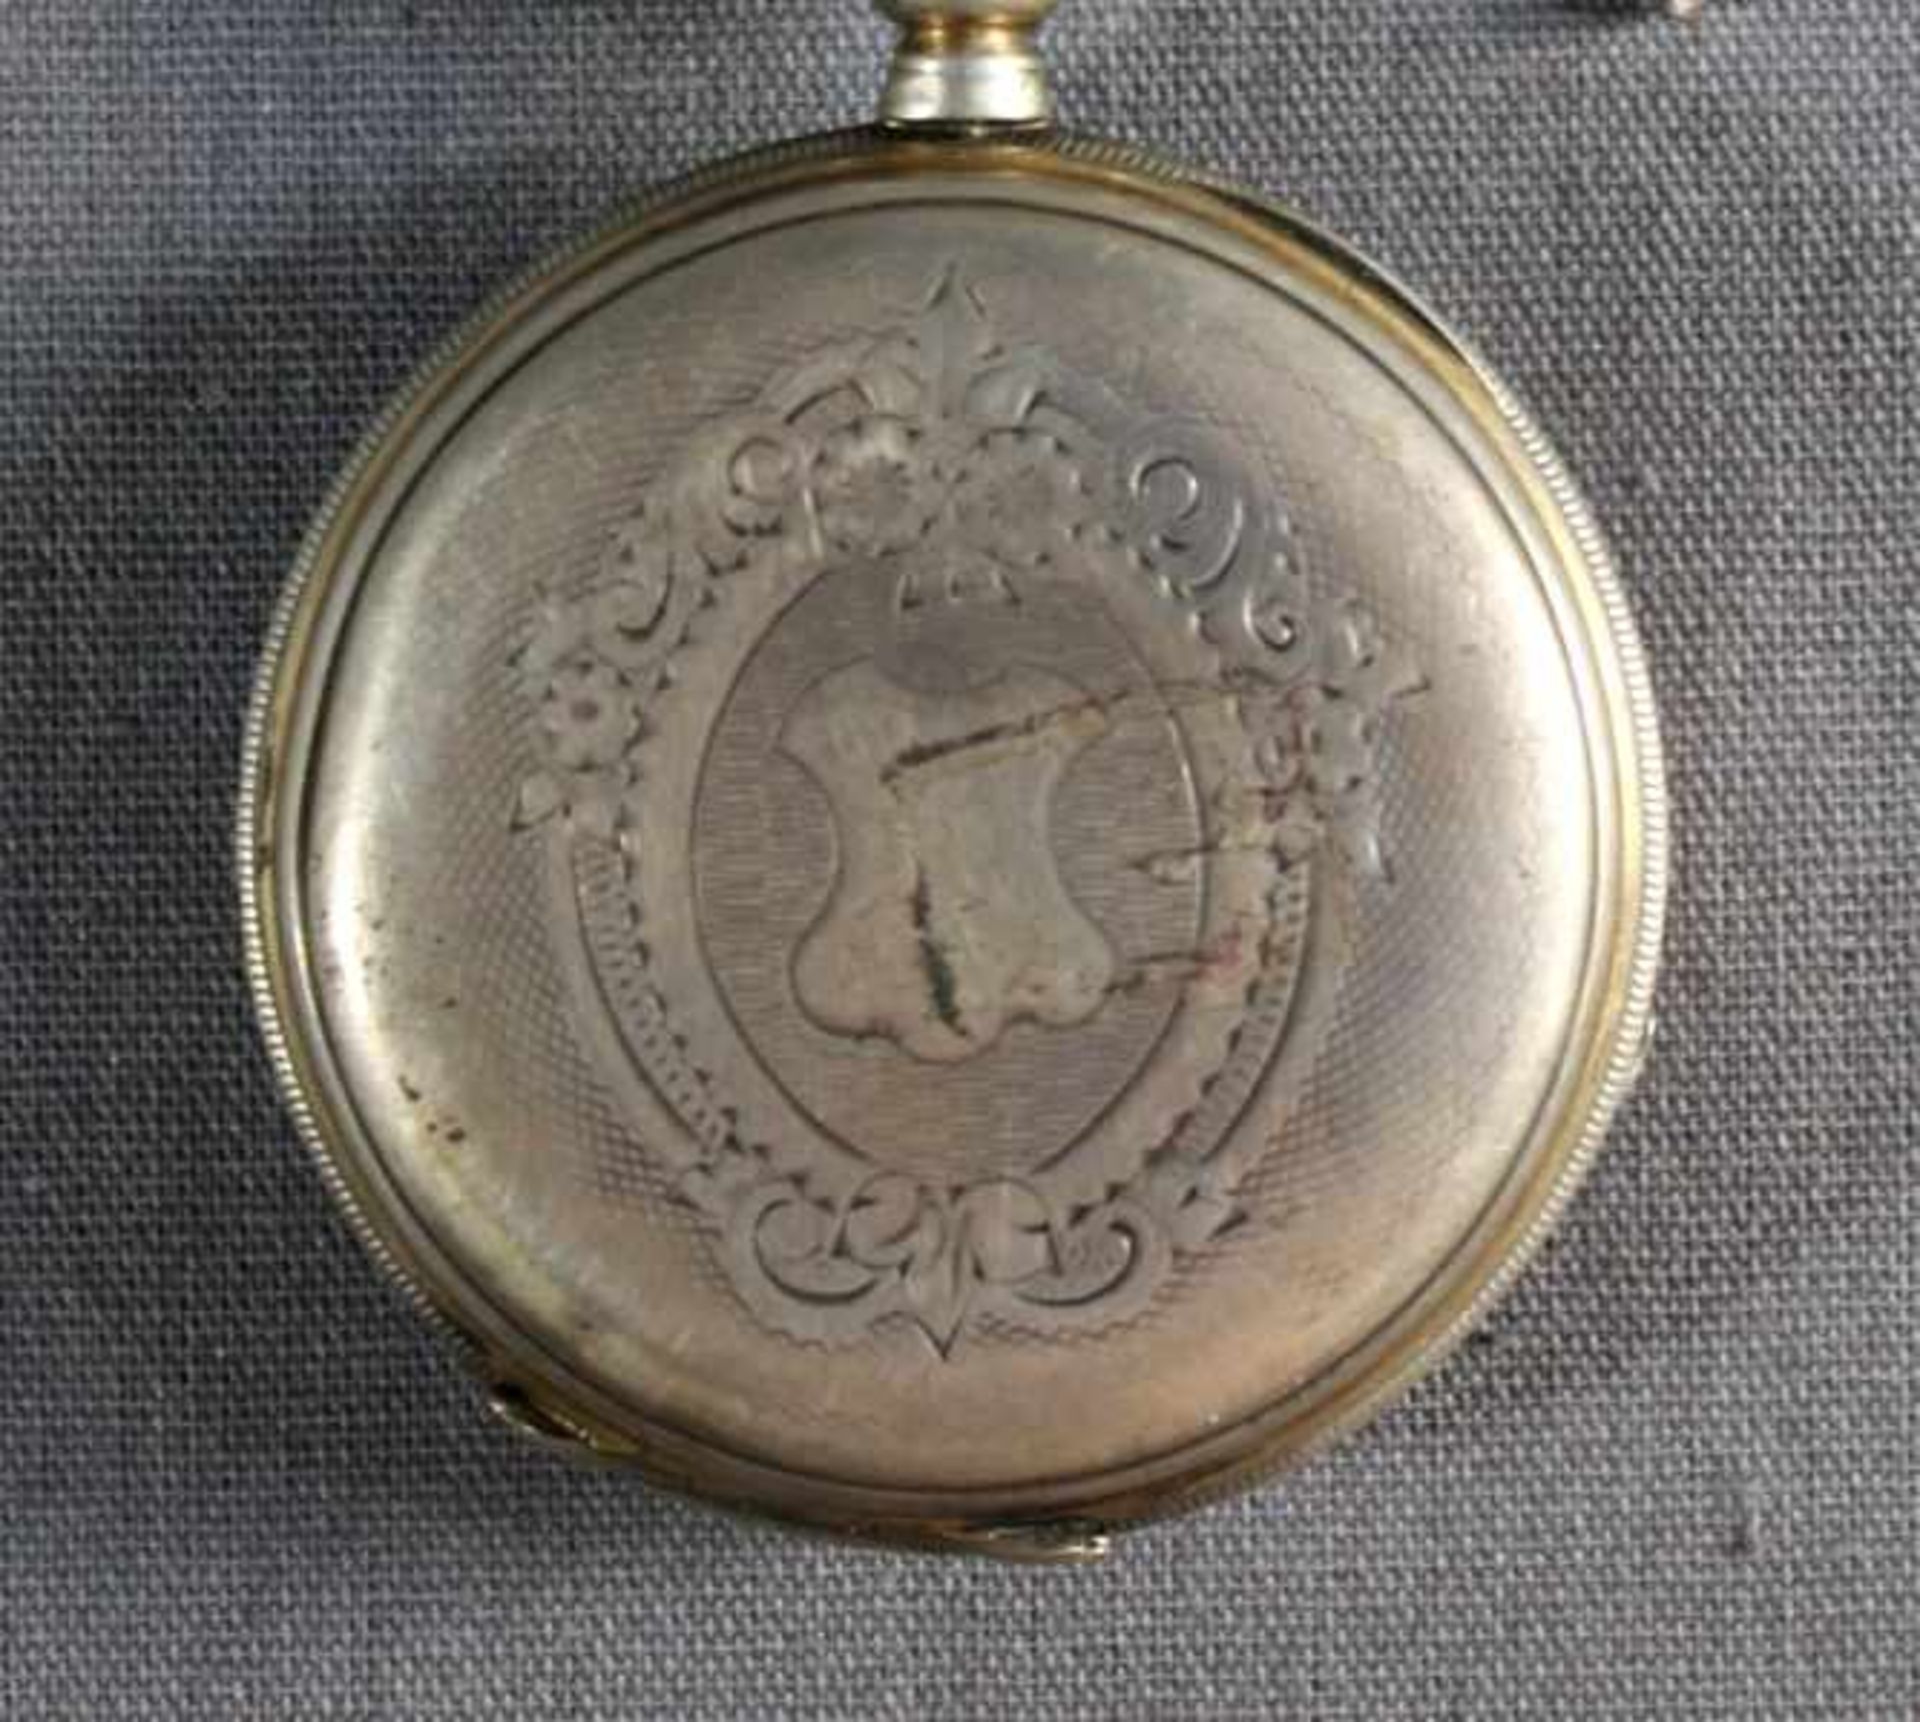 1 Taschenuhr Silber, Rückdeckel floral verziert und mit Monogrammkartusche, 2-farbiges Zifferblatt - Image 2 of 4